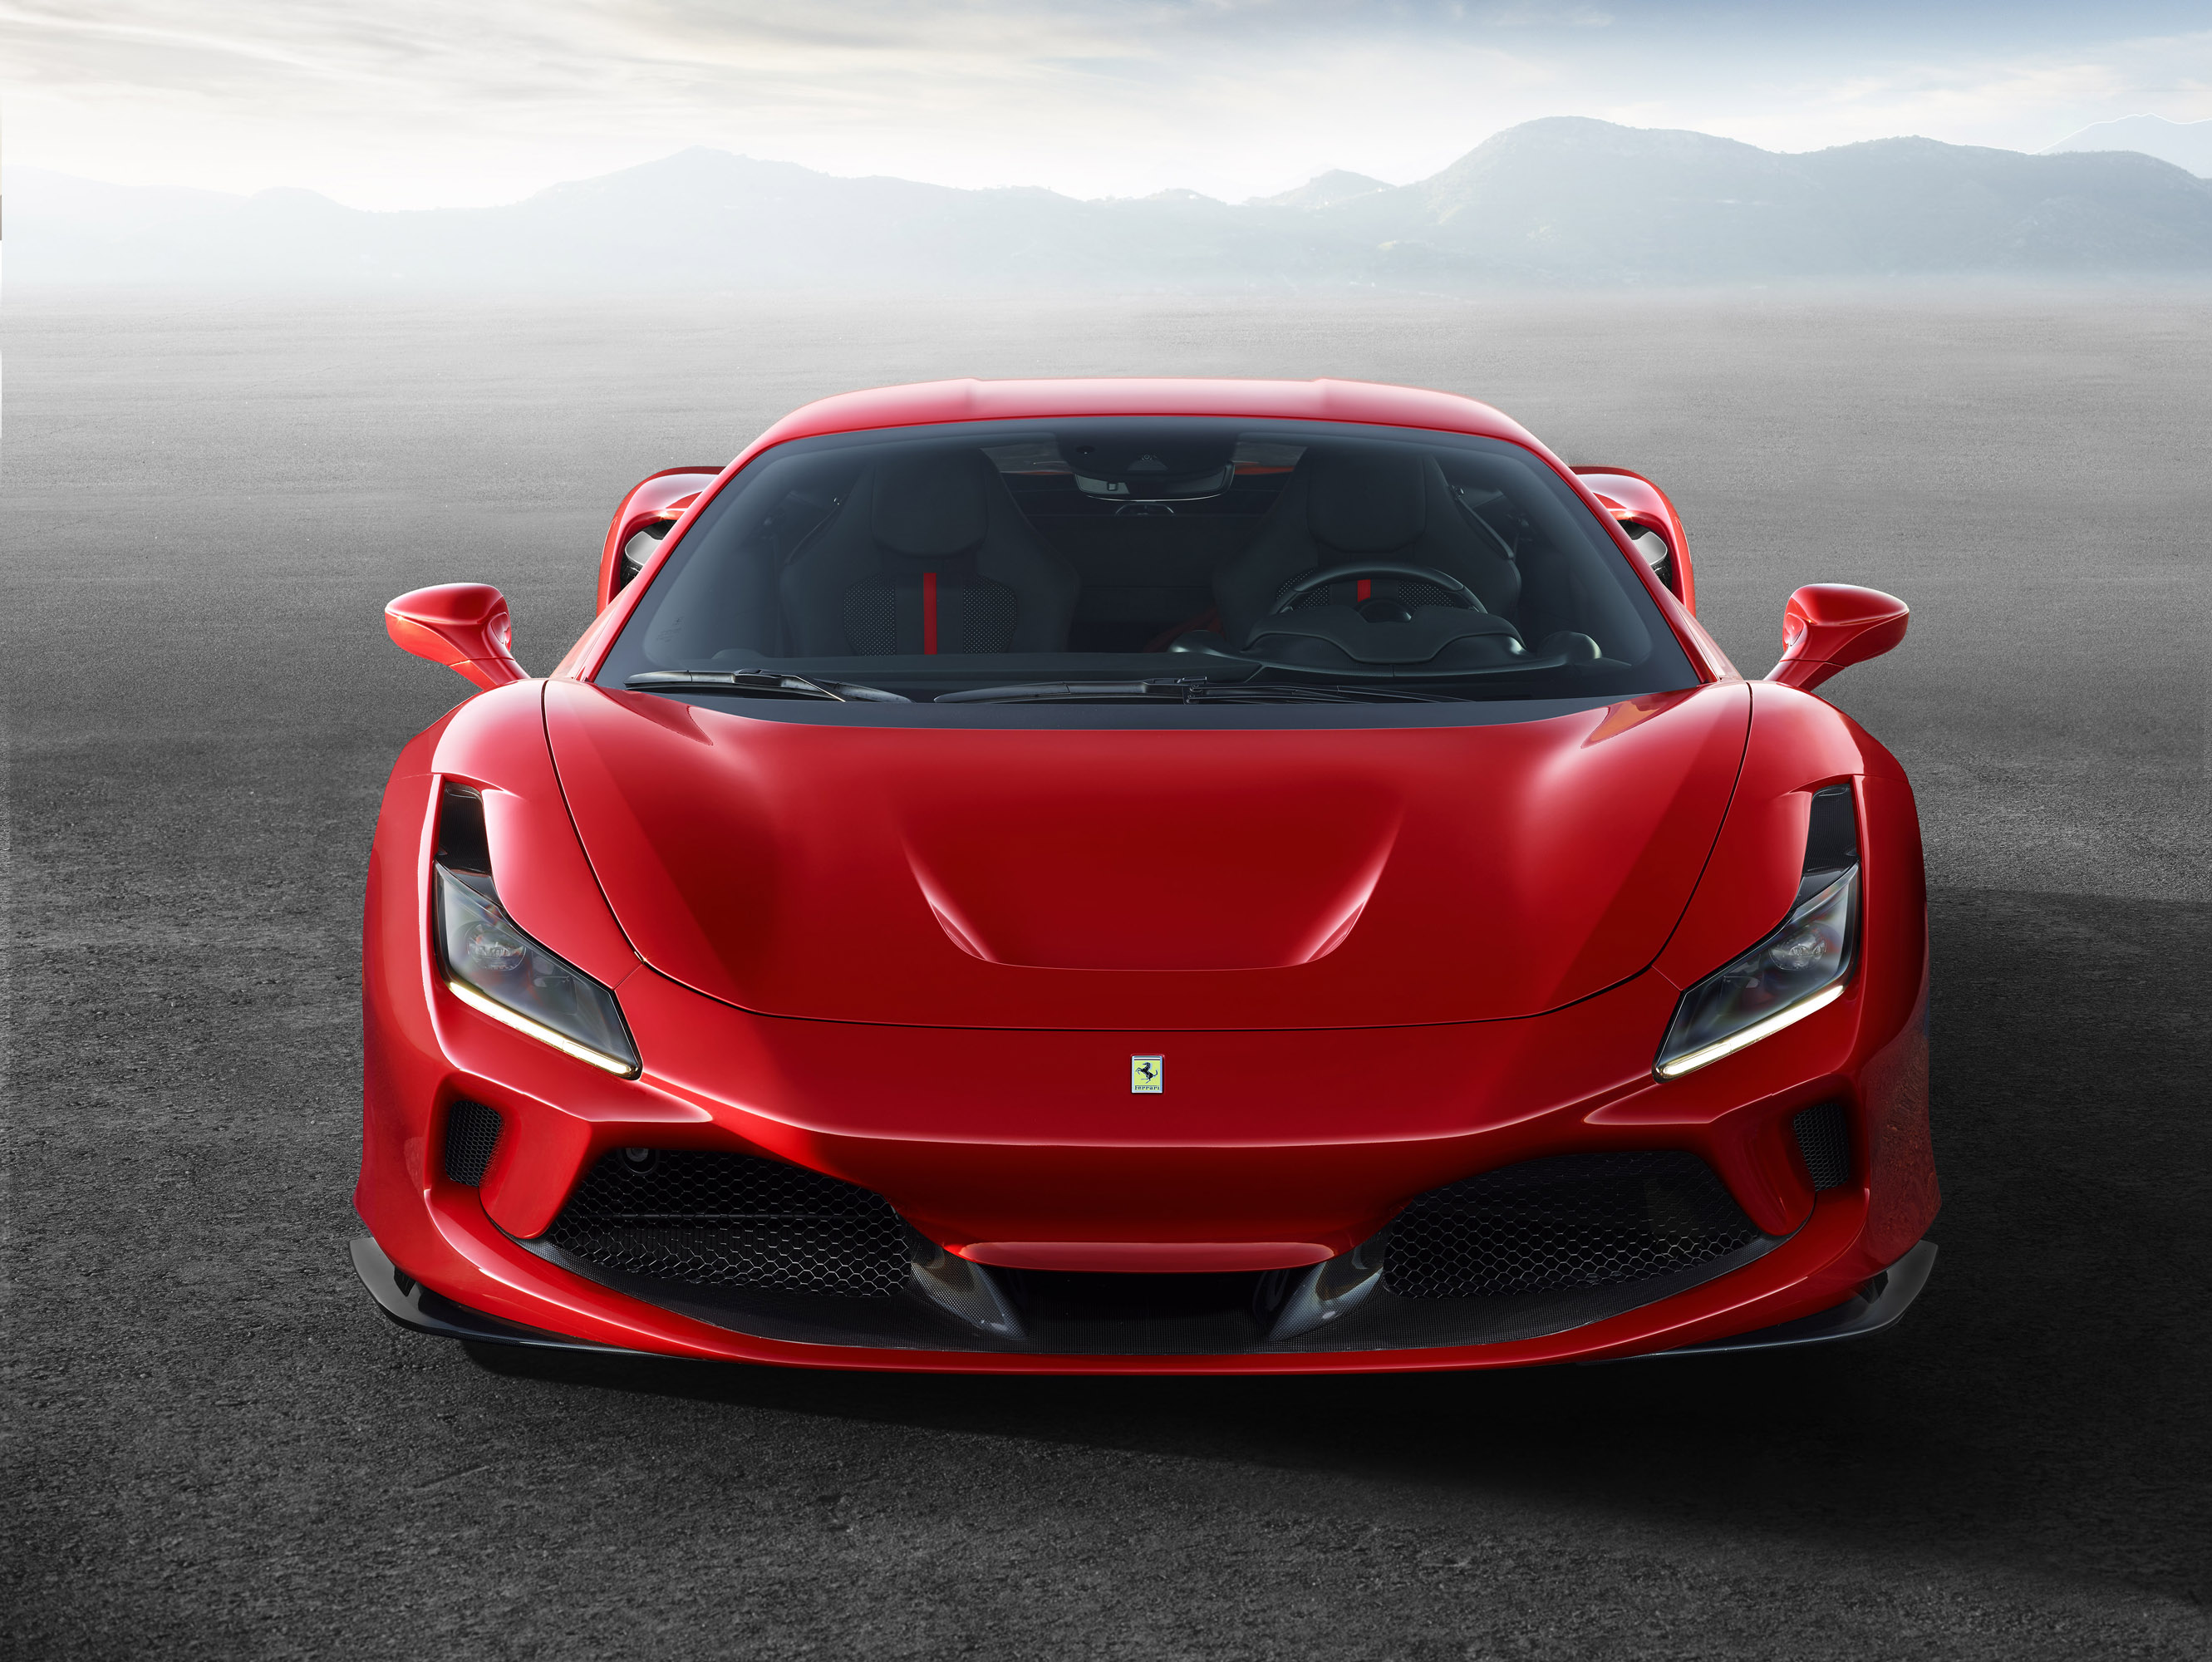 Ferrari впервые представил официальные фотографии F8 Tributo, спортивного автомобиля с задним расположением двигателя, который представляет собой высшее выражение классической двухместной берлинетты бренда.